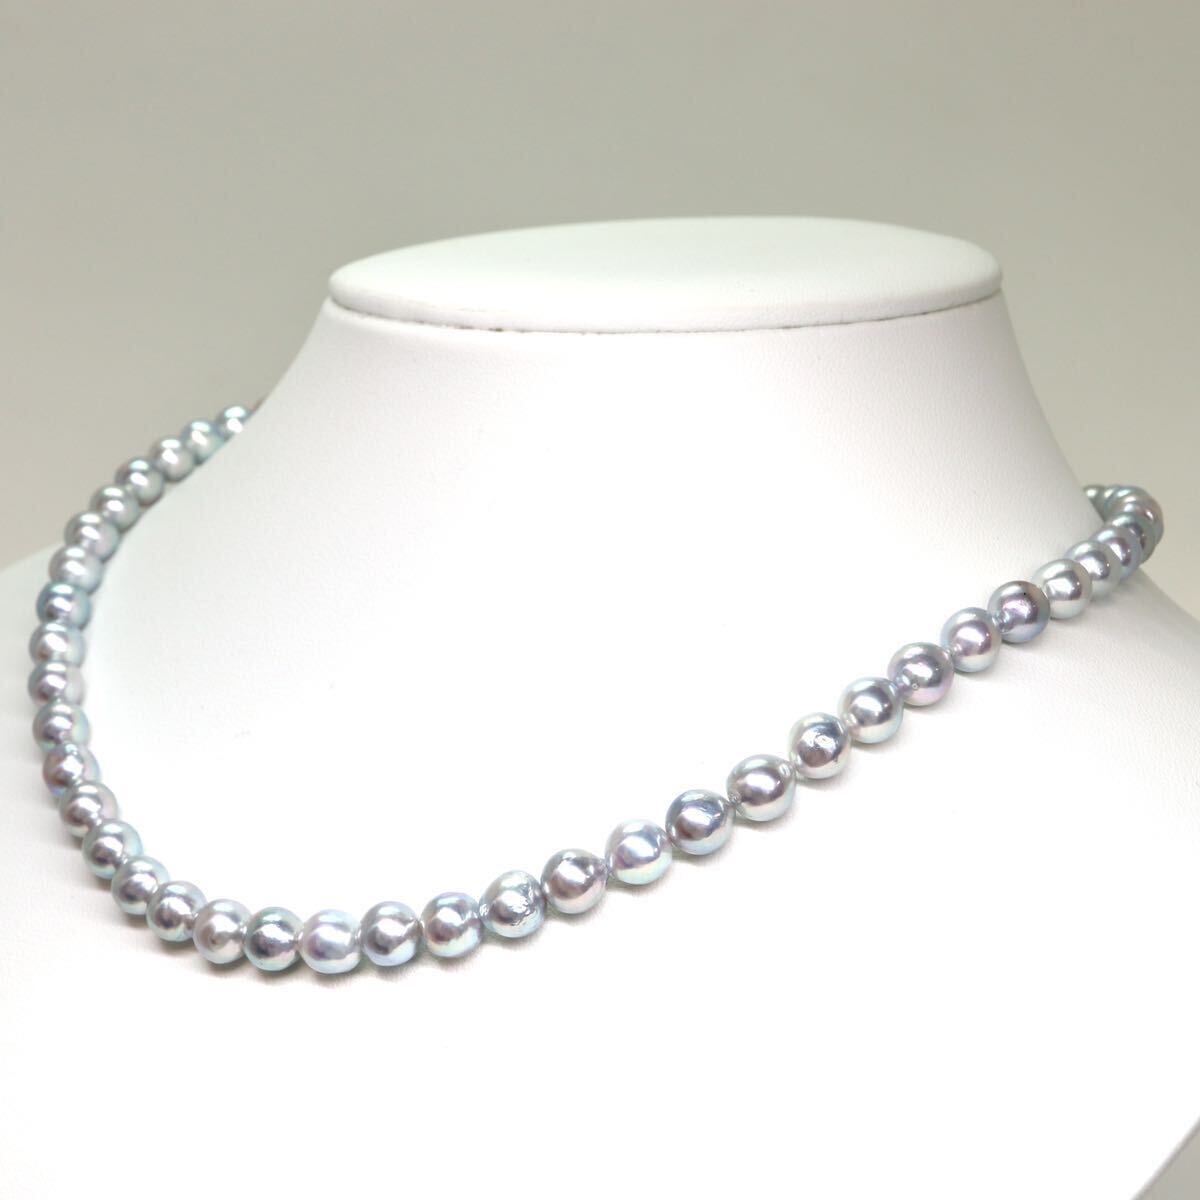 テリ良し!!《アコヤ本真珠ネックレス》A 約6.5-7.0mm珠 28.0g 約43cm pearl necklace ジュエリー jewelry CE0/CE0の画像3